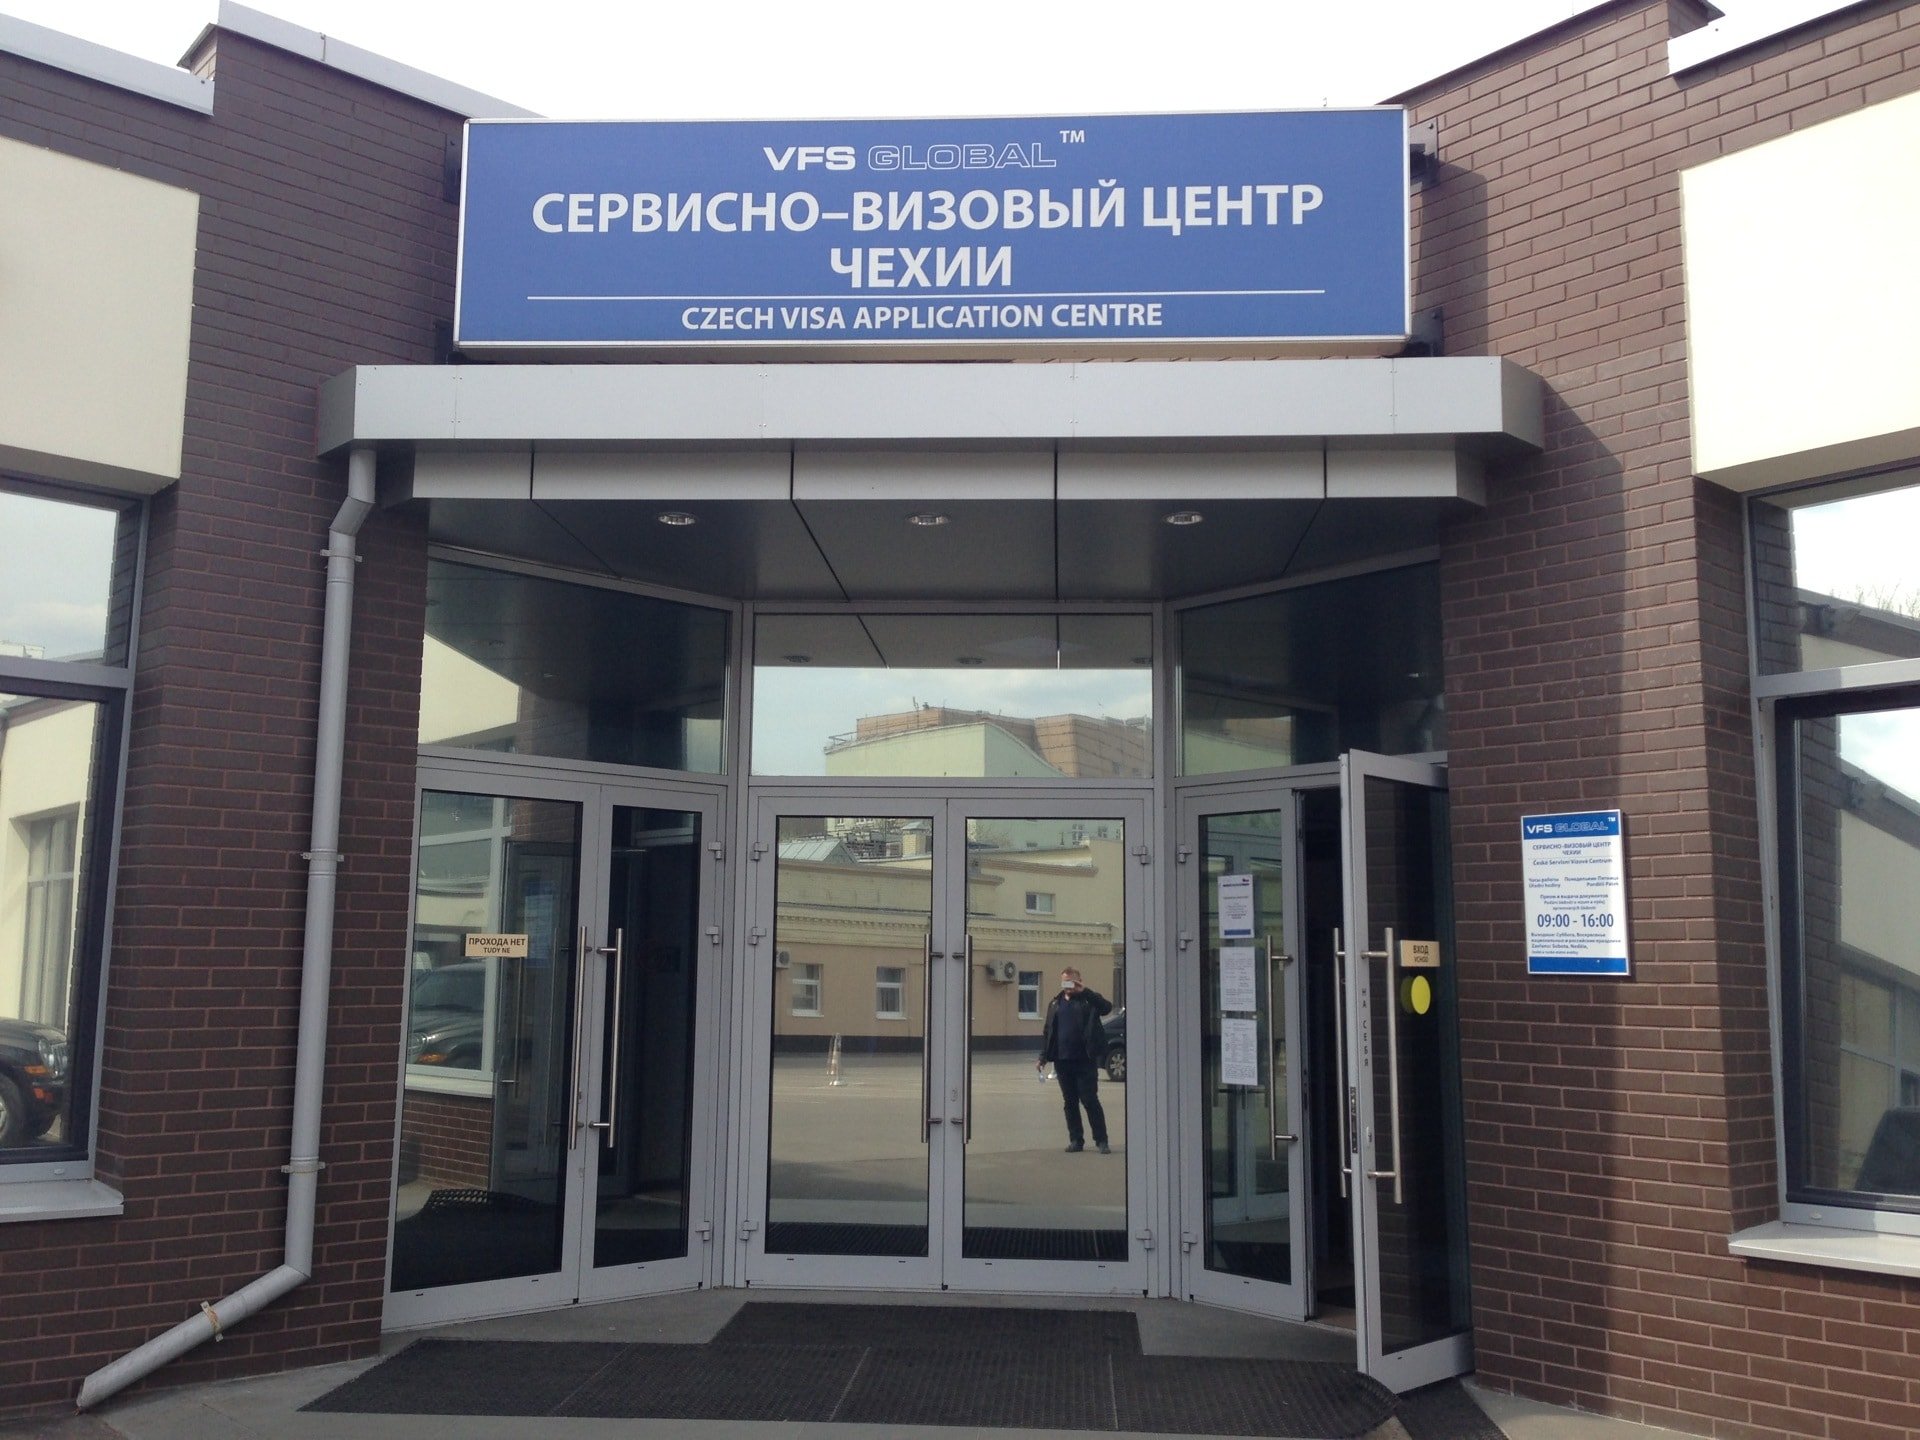 Сервисно-визовый центр республики польша в санкт-петербурге